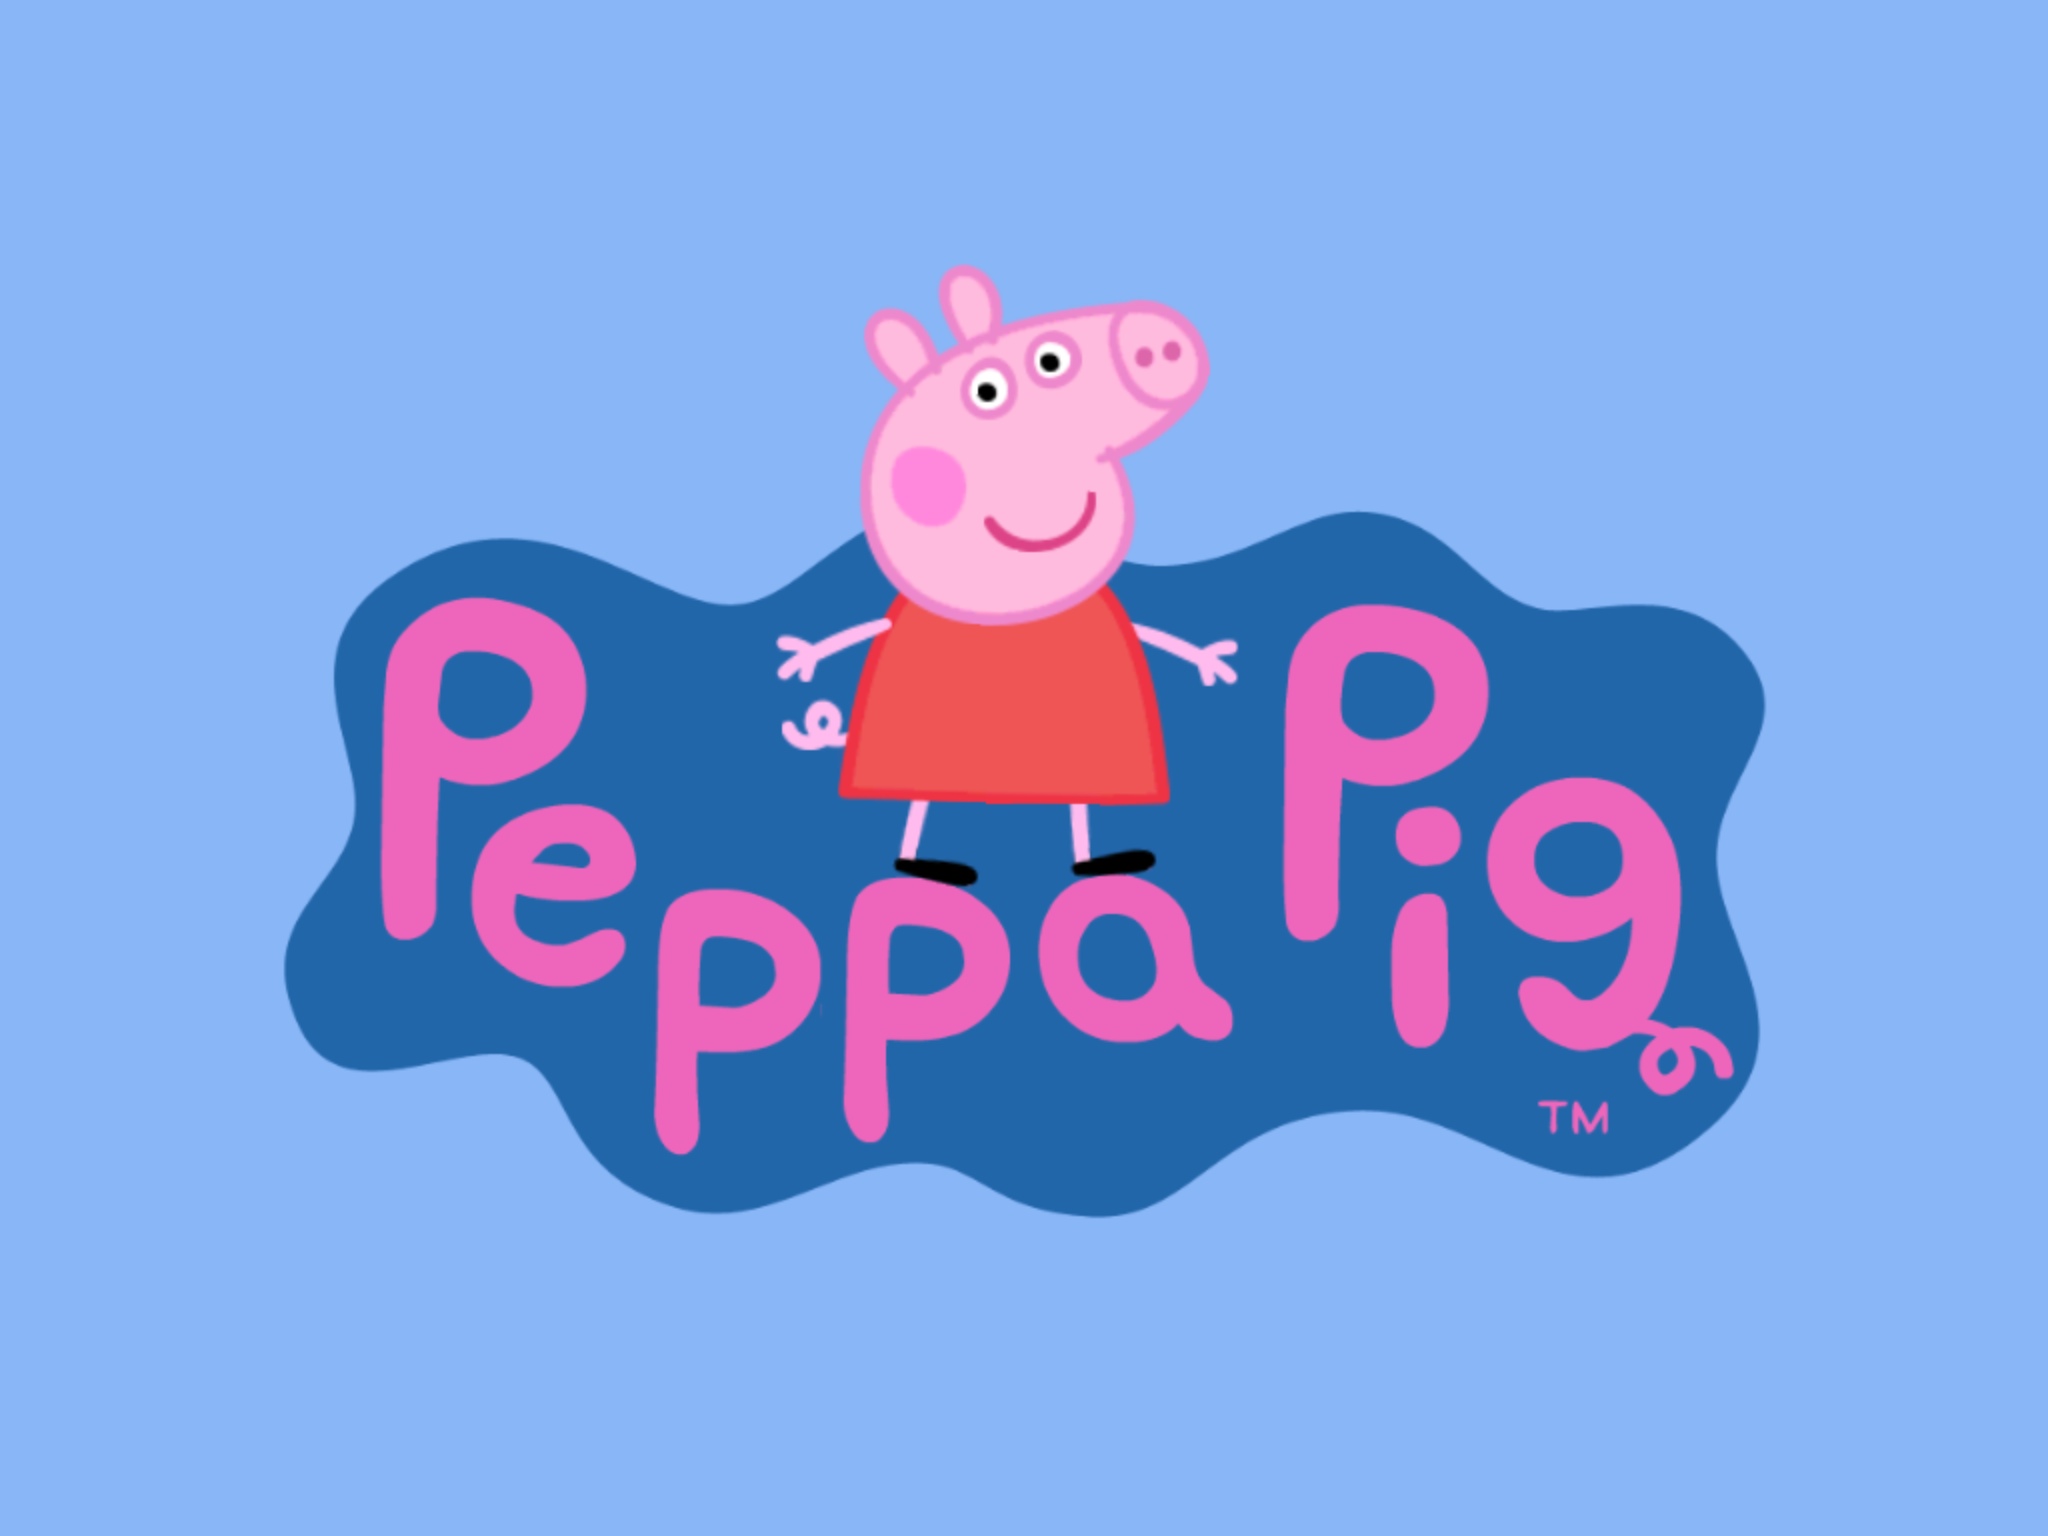 Peppa pig em wallpaper   Fotos e fotos O maior banco de imagens 2048x1536